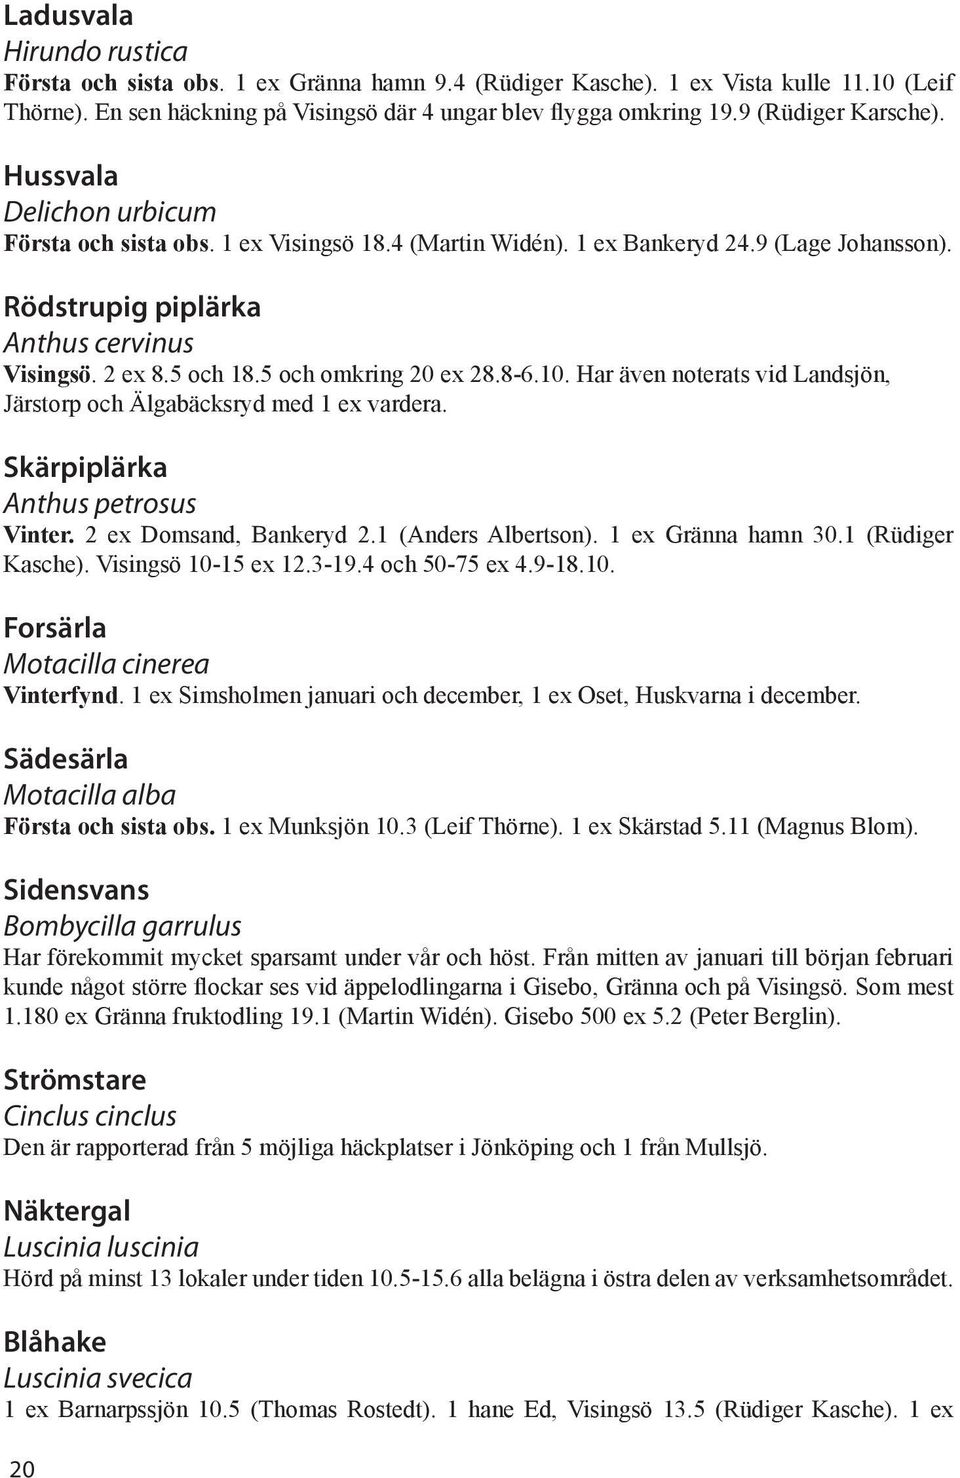 5 och 18.5 och omkring 20 ex 28.8-6.10. Har även noterats vid Landsjön, Järstorp och Älgabäcksryd med 1 ex vardera. Skärpiplärka Anthus petrosus Vinter. 2 ex Domsand, Bankeryd 2.1 (Anders Albertson).